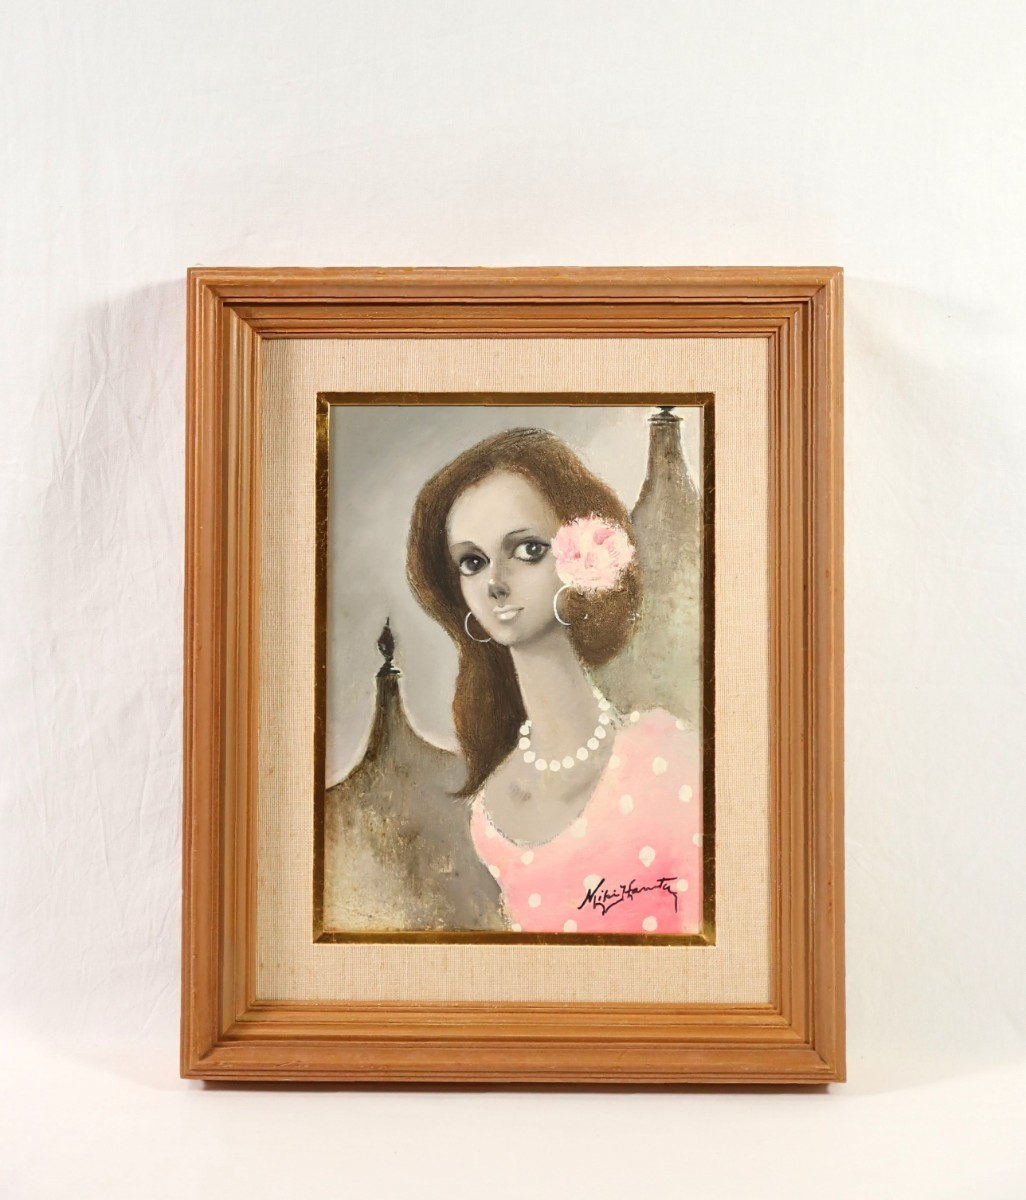 Echte Arbeit von Miki Haruta, Ölgemälde Niña Mui Bonita, süßes Mädchen Größe 24 x 33 cm, F4, aus der Präfektur Kumamoto, studierte bei Seiji Togo, weiblicher Gesichtsausdruck auf der Malfläche, übernommen vom Meister, 7653, Malerei, Ölgemälde, Porträts